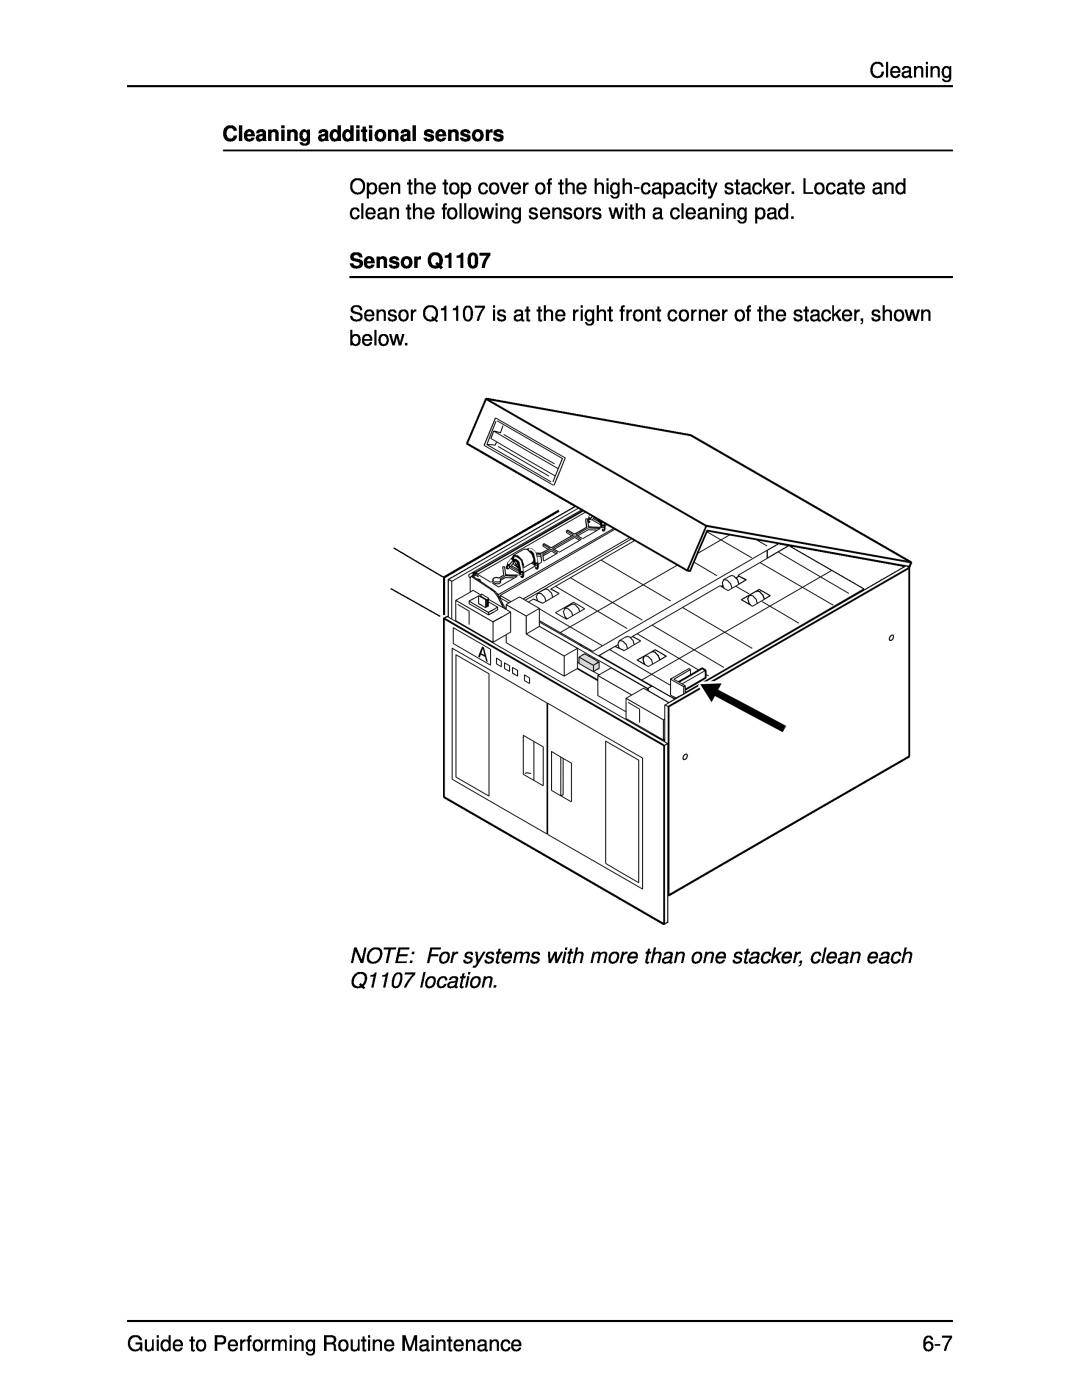 Xerox DocuPrint 96 manual Cleaning additional sensors, Sensor Q1107 